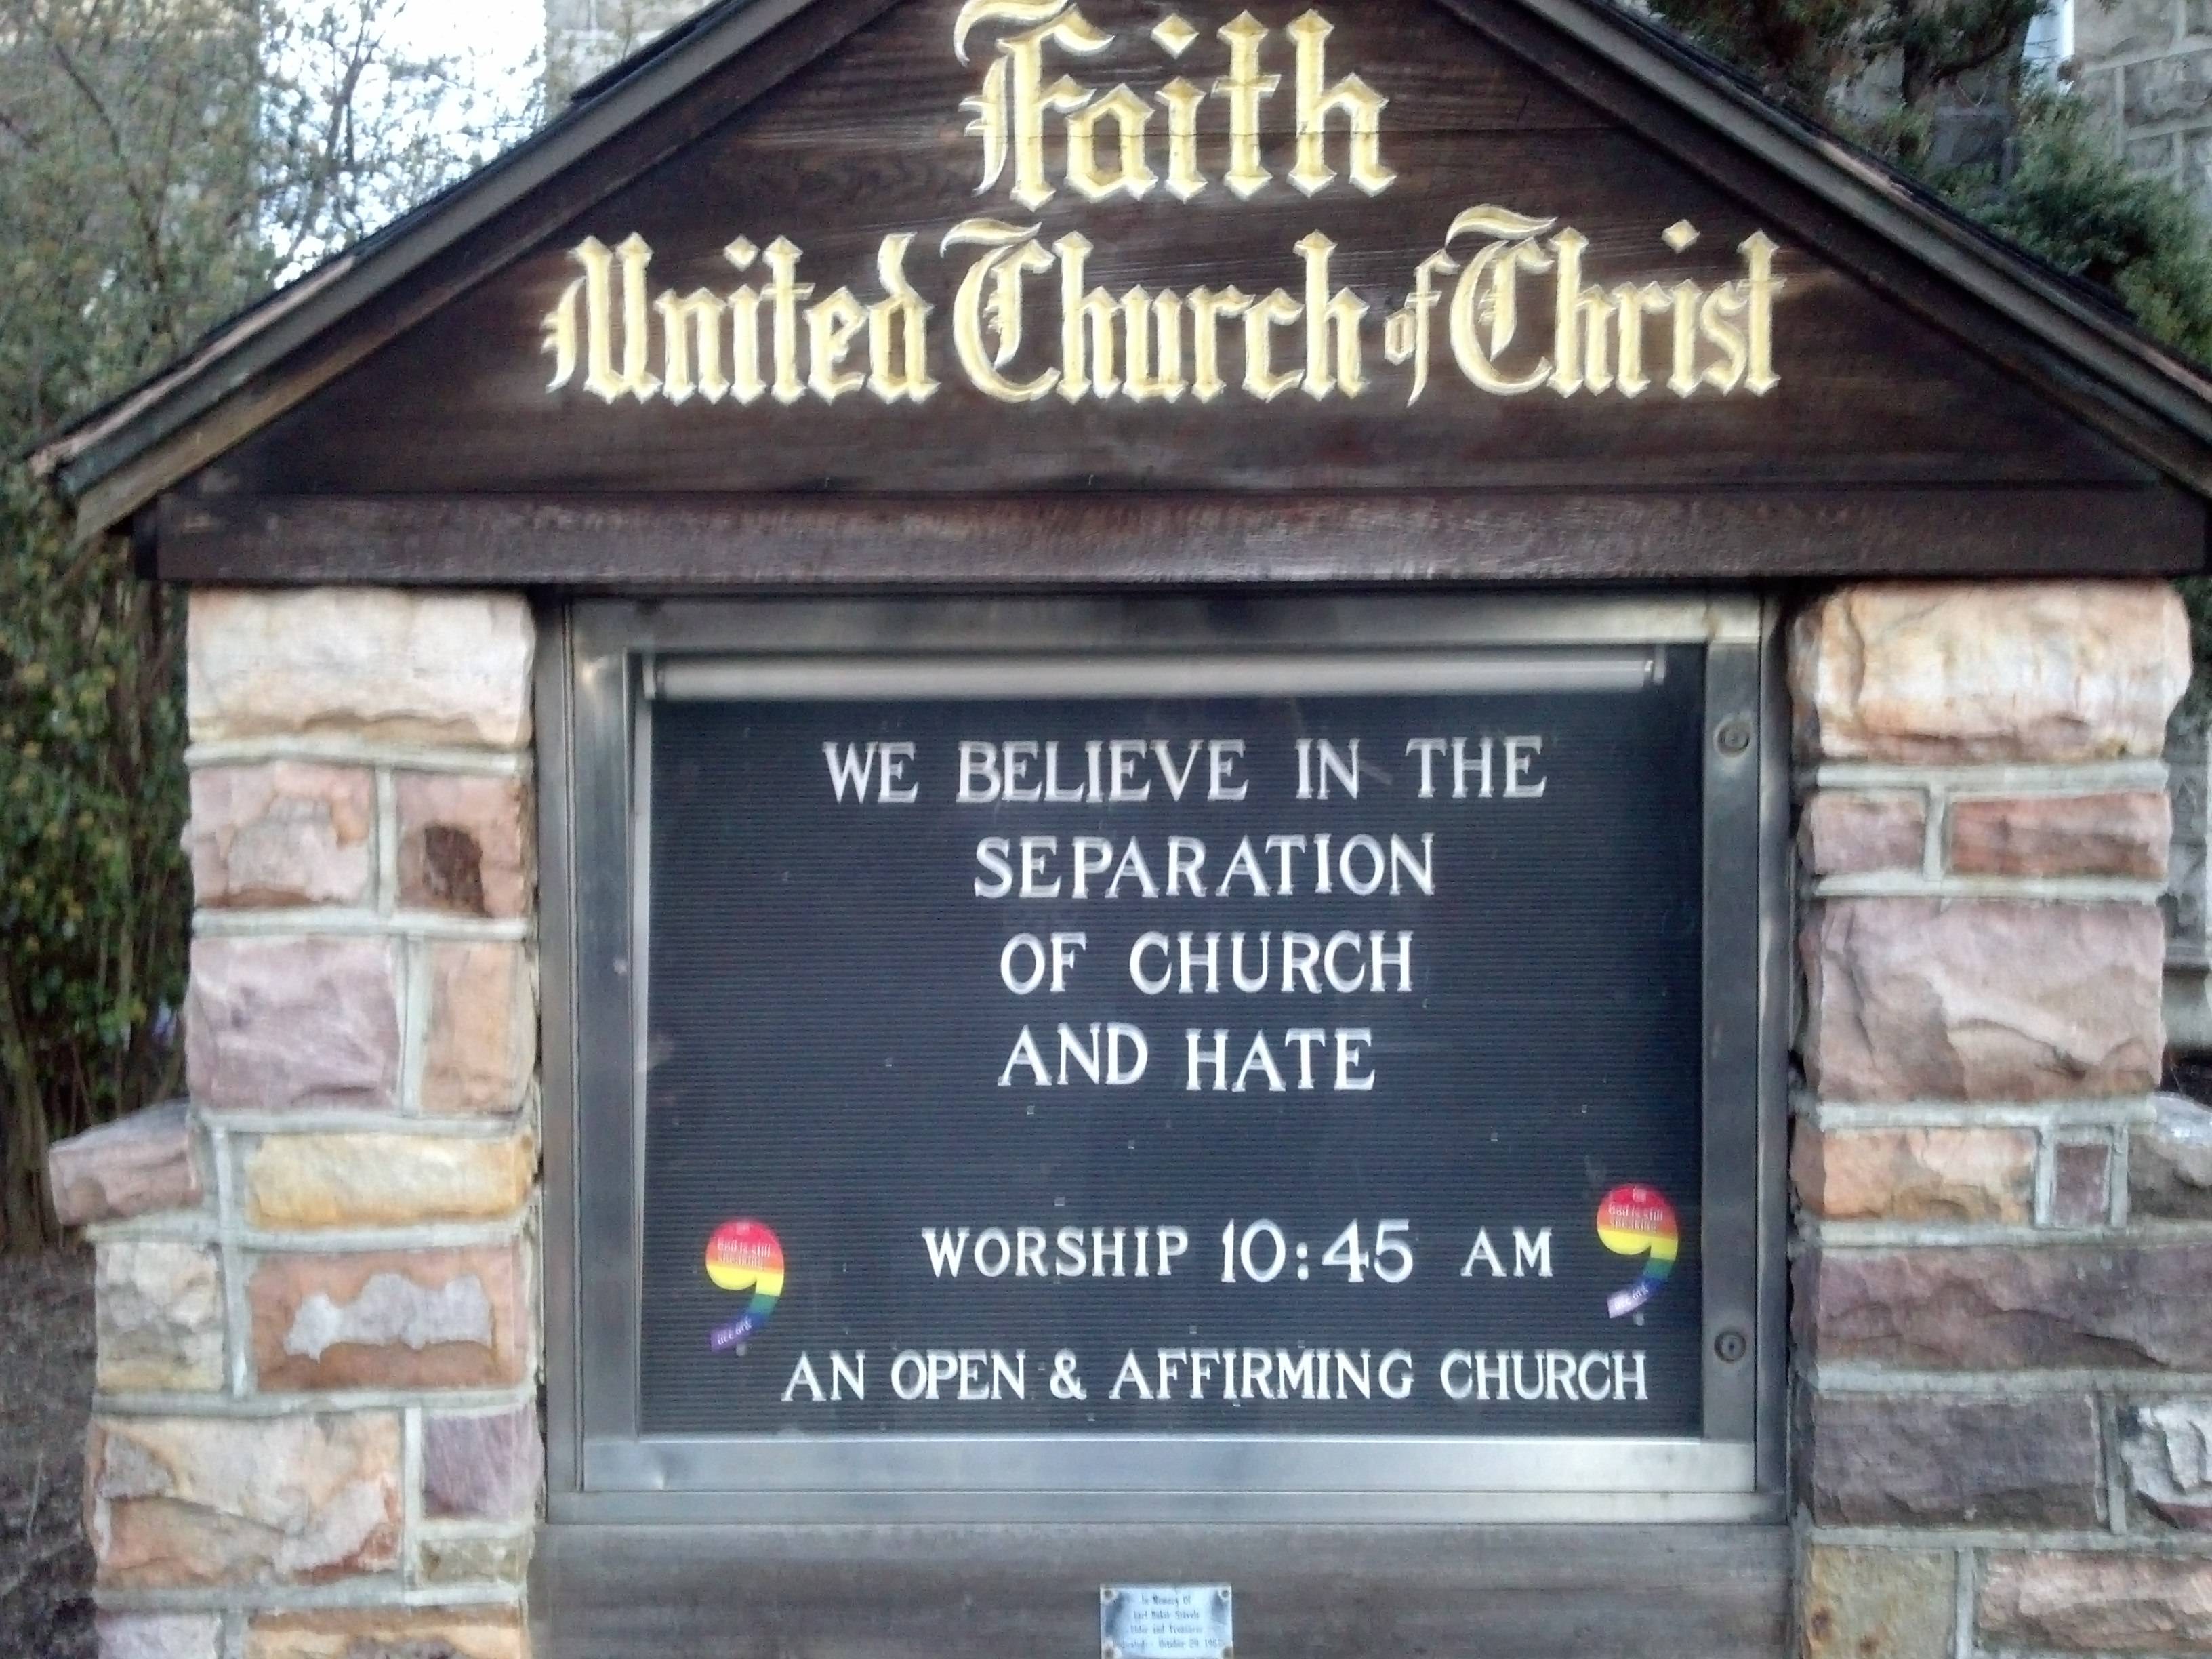 A truly tolerant church?  So it seems.